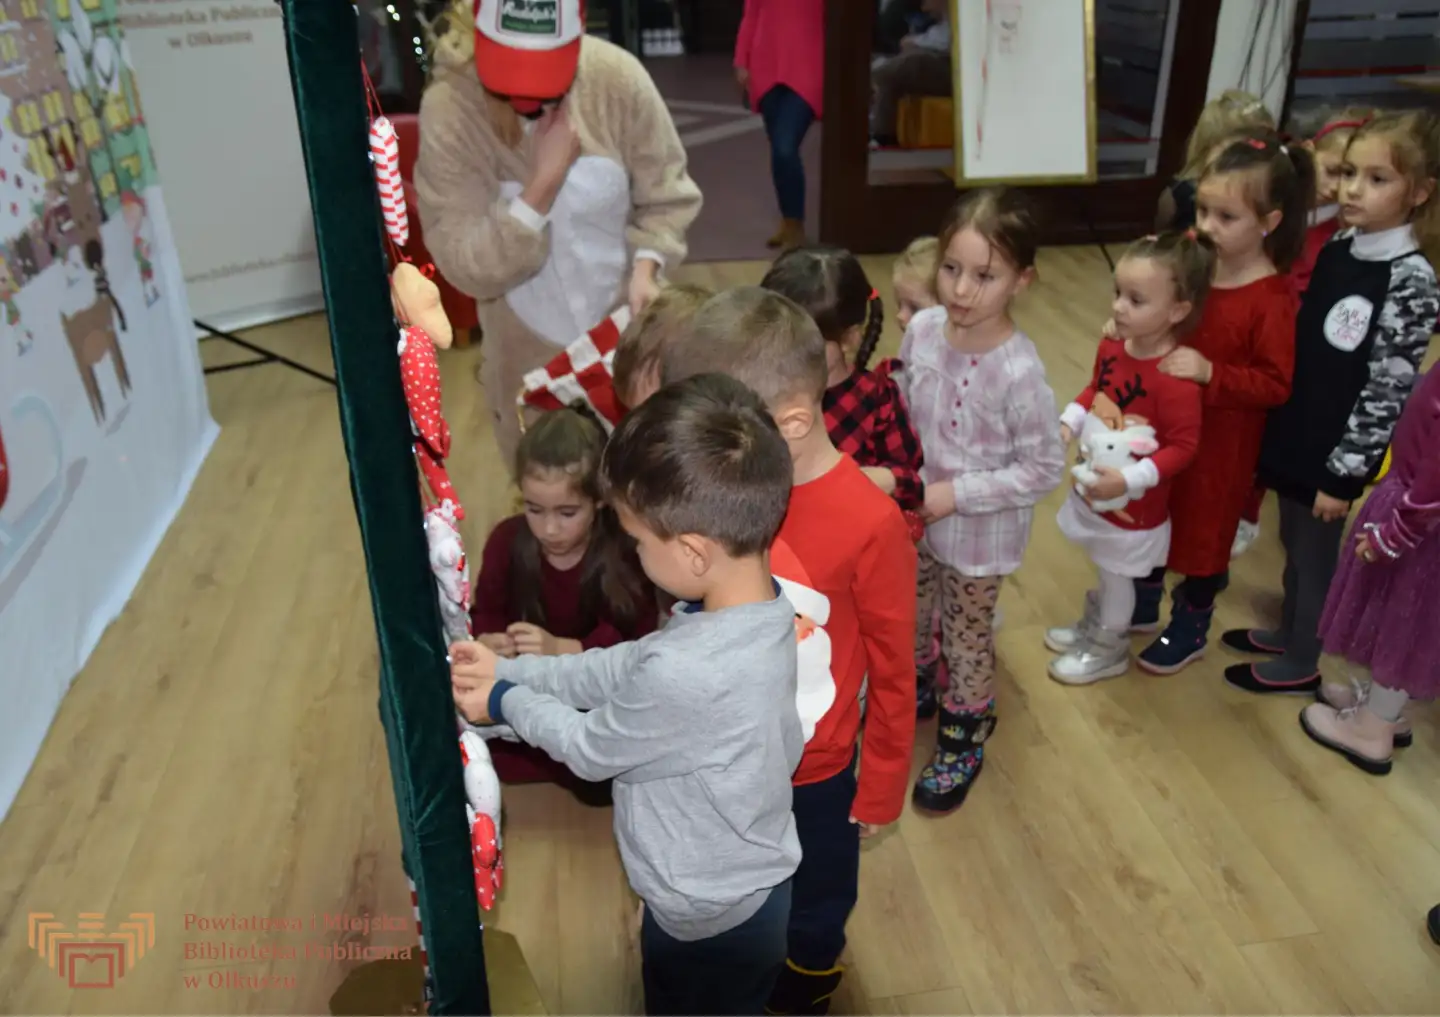 Zdjęcie zostało zrobione w Czytelni olkuskiej Biblioteki. Do tablicy w kształcie choinki stoją ustawione dzieci i przypinają ozdoby świąteczne.